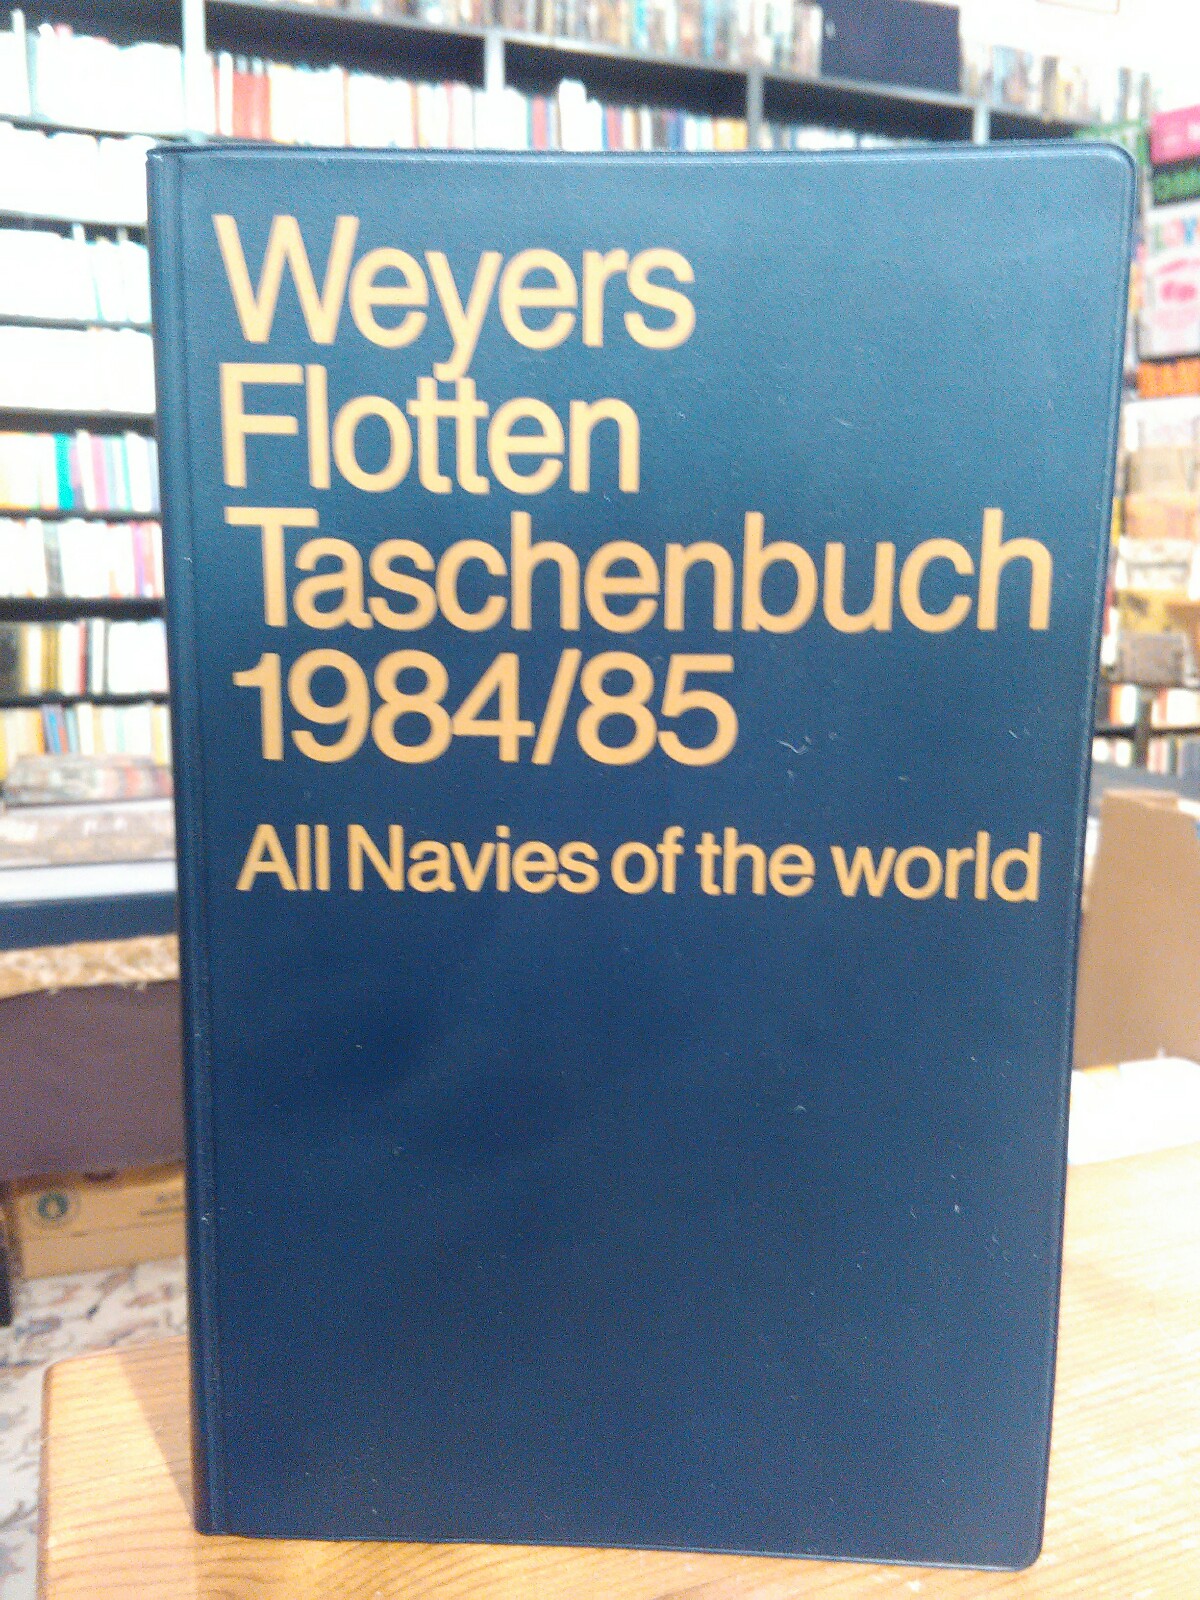 Weyers Flottentaschenbuch. Wahrships of the World Fleet Handbook. 60. Jahrgang 1990 / 91. Mit einer Einführung von Norman Polmar. - Albrecht, Gerhard (Hrsg.)